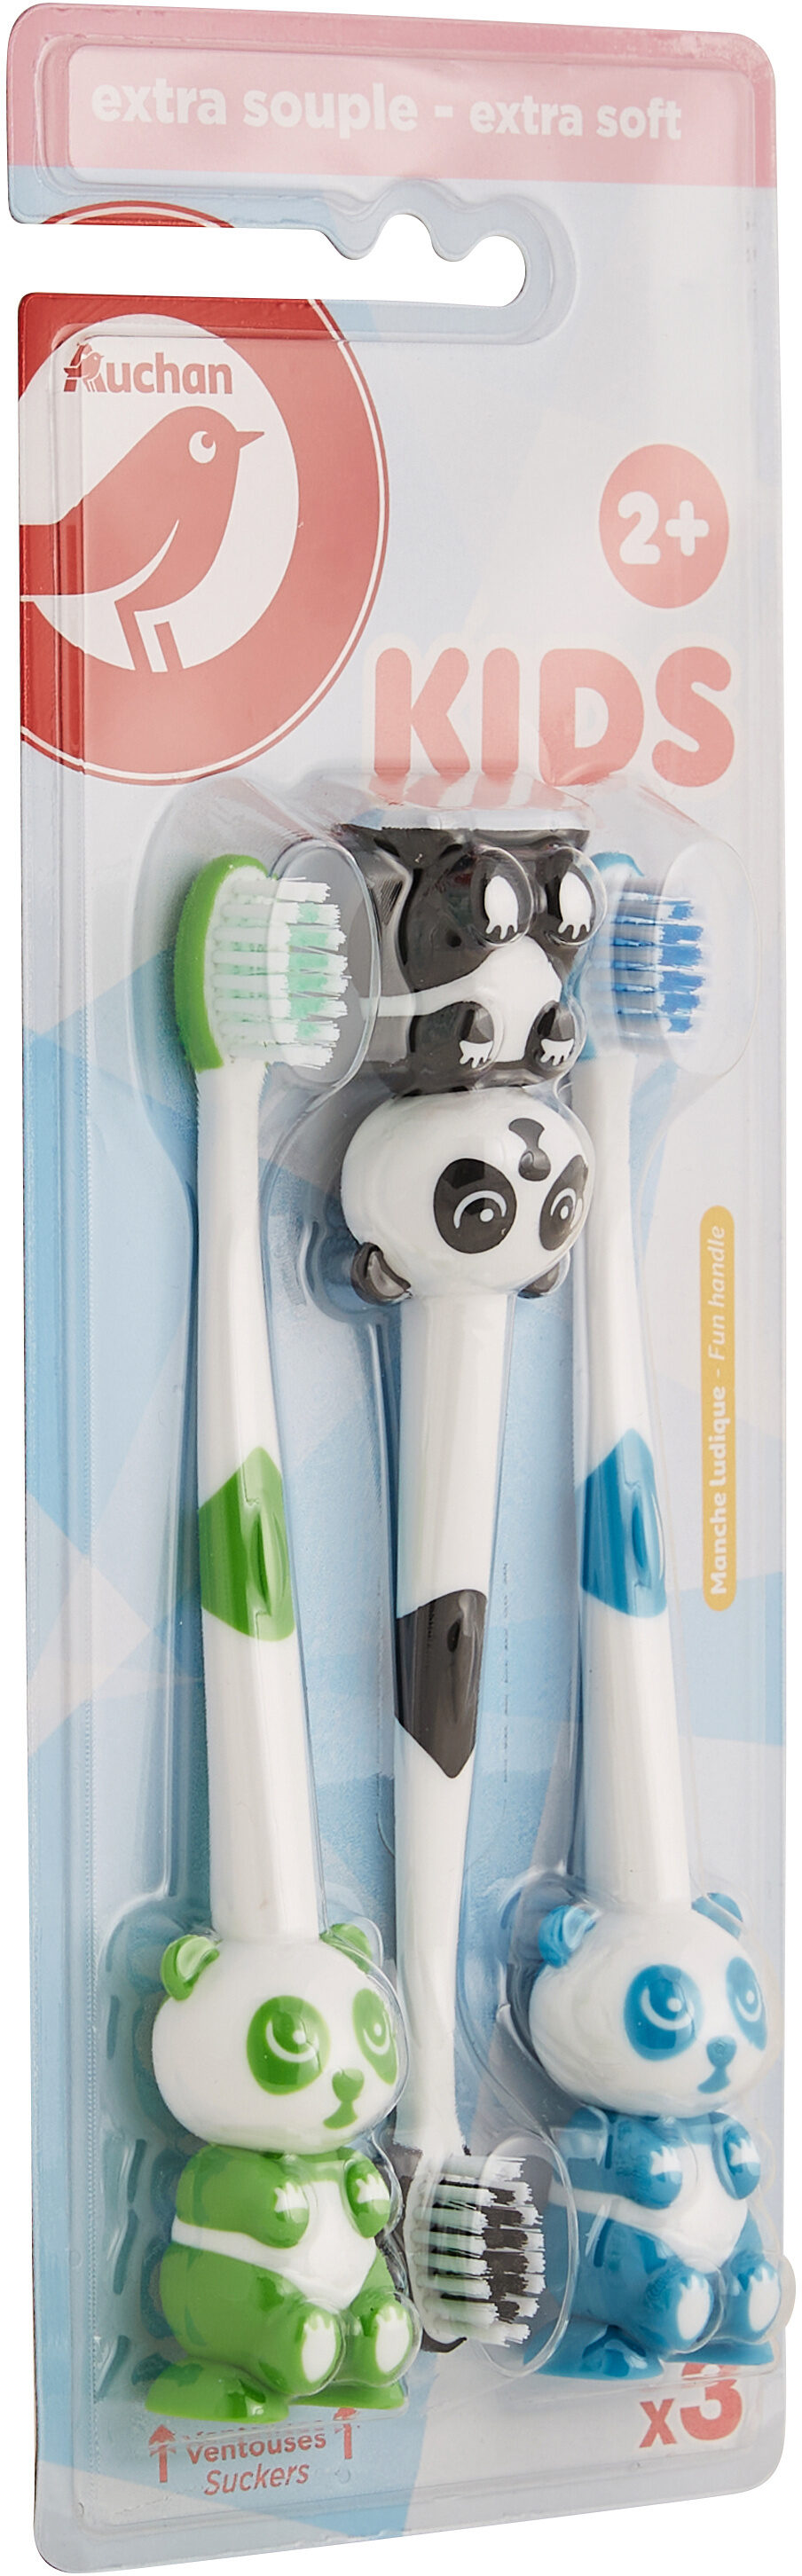 Brosse à dents enfant - Product - fr